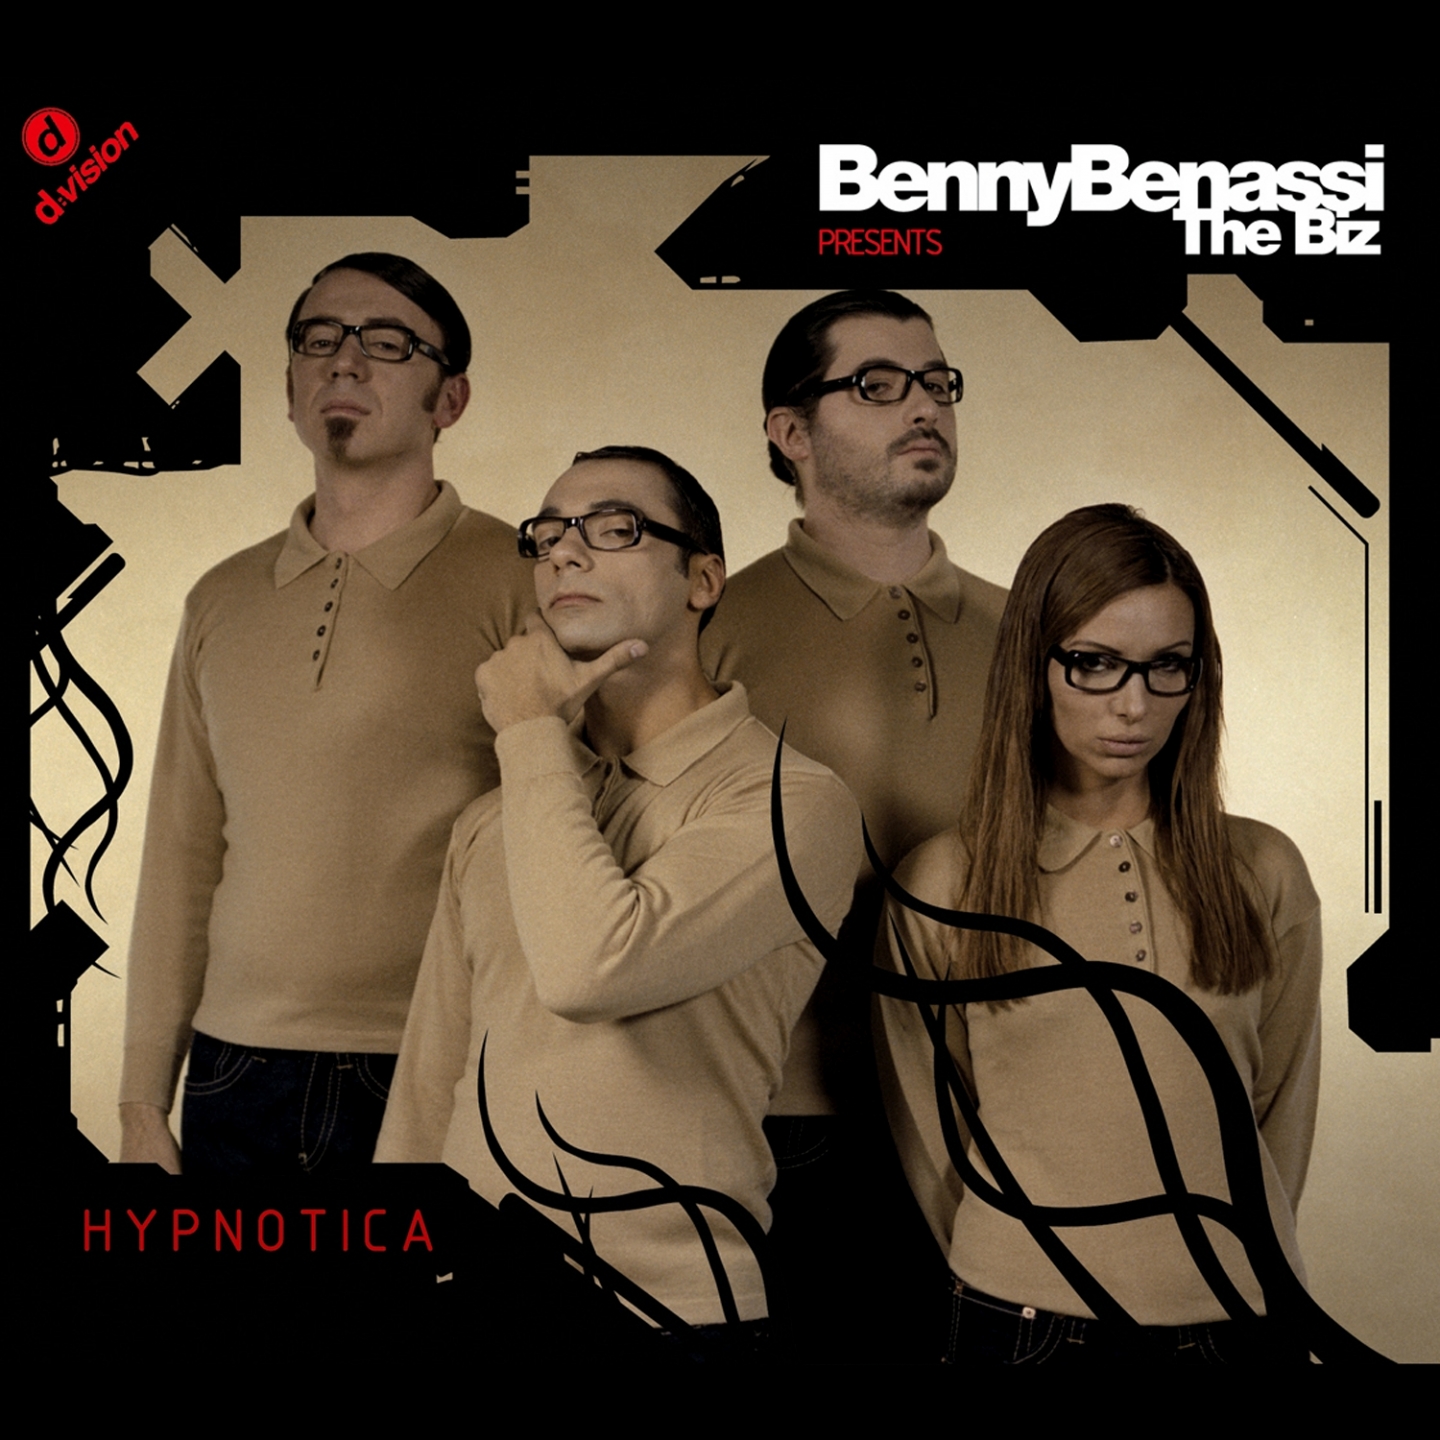 Benny Benassi, The Biz - I'm Sorry (Original) [Benny Benassi Presents The Biz] фото